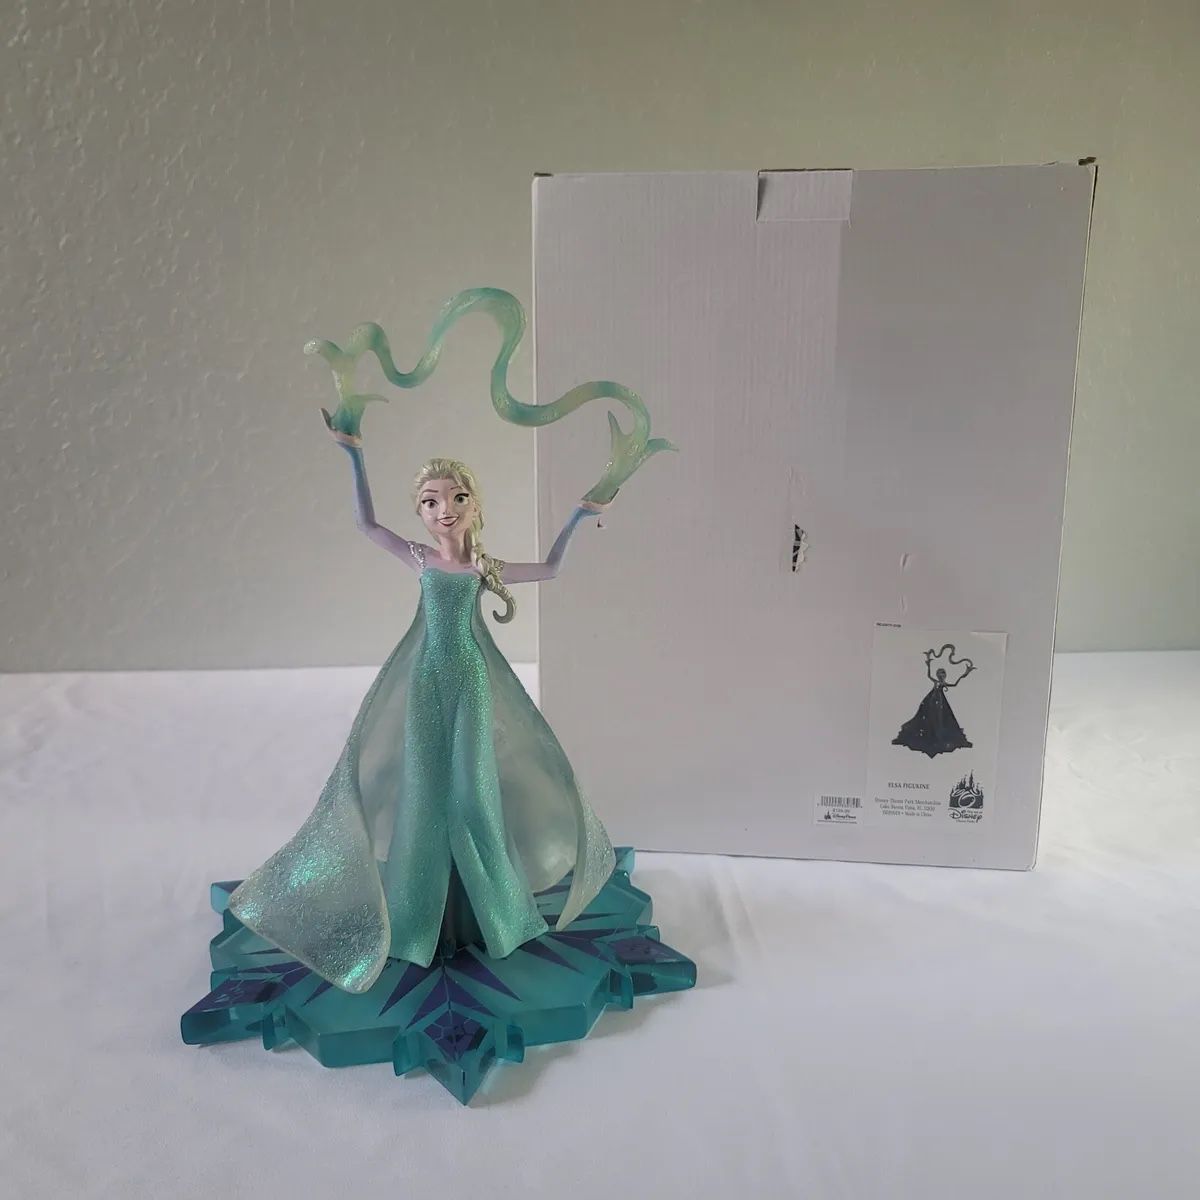 Rare 14" Frozen Queen Elsa Figure Ron Cohee Figurine Art of Disney 